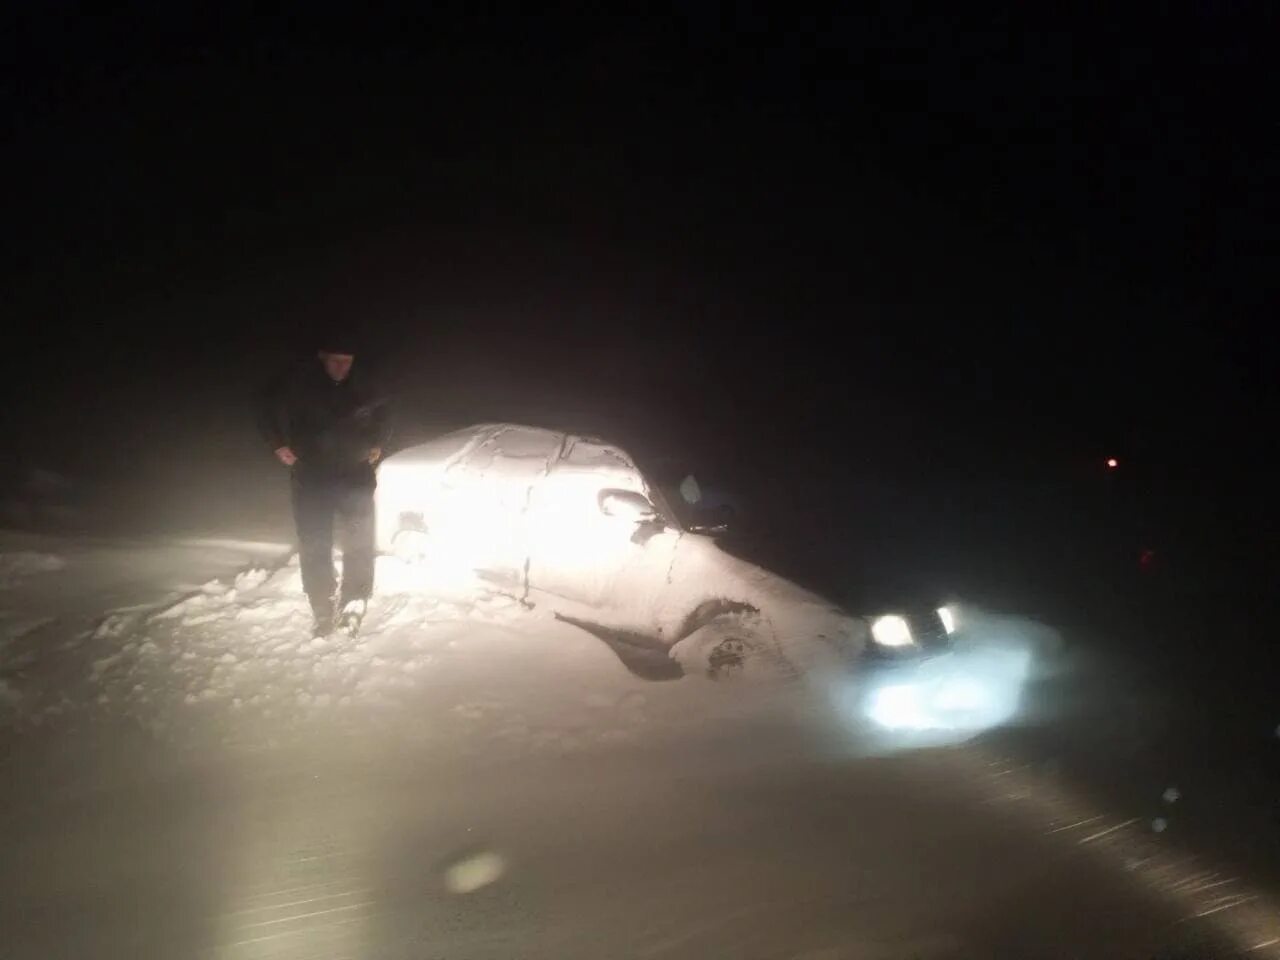 Время 26 12 15. Машина застряла в снегу ночью. Застрял в снегу на трассе ночь. На трассе застряли в снегу. Машина забуксовала в ночи.